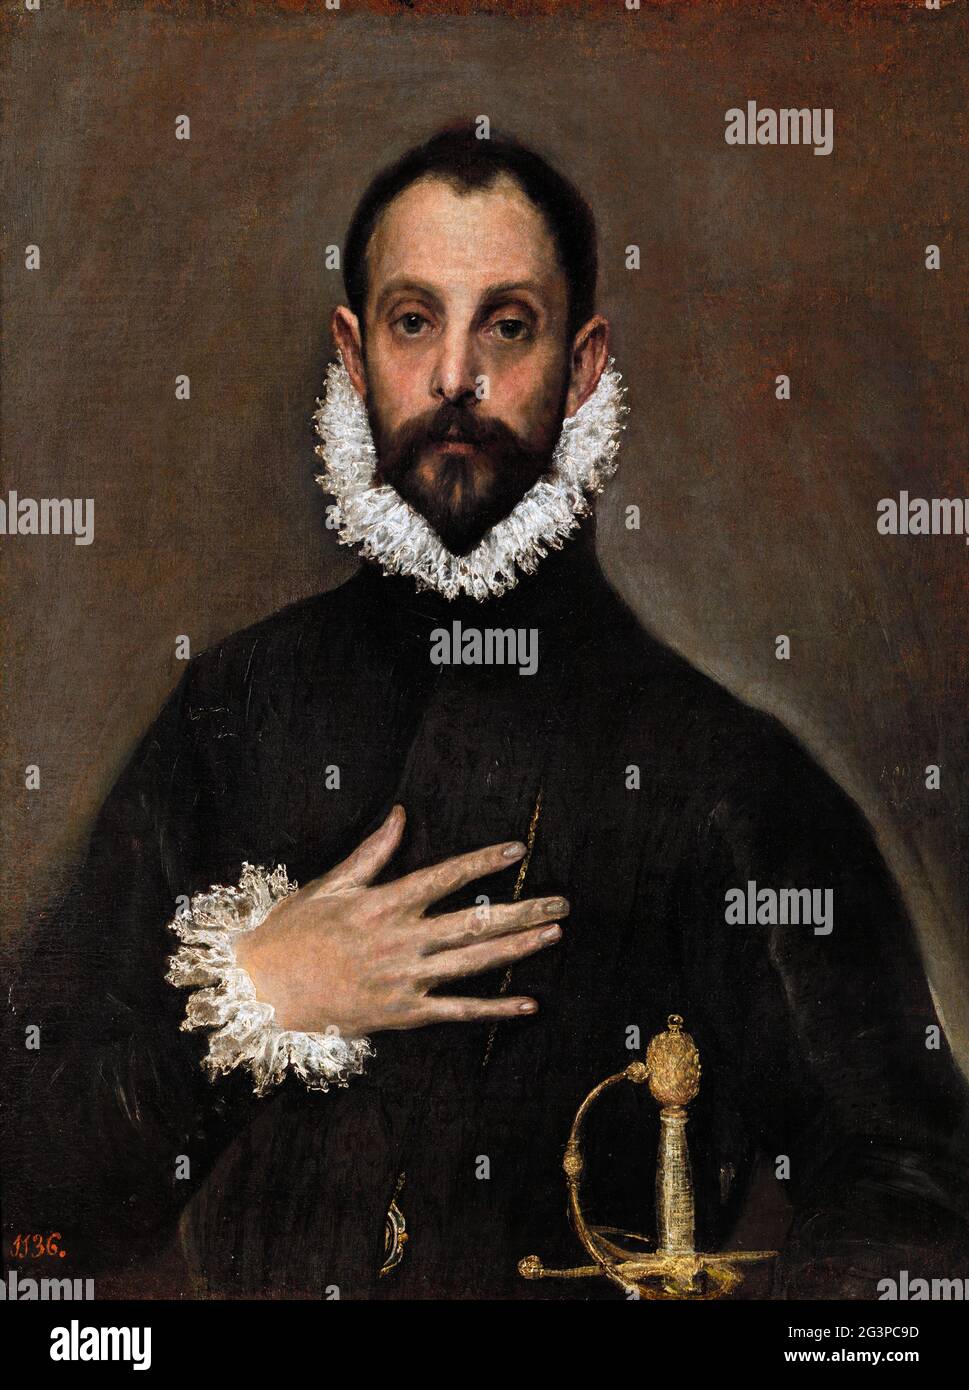 El caballero de la mano en el pecho (The Nobleman with his Hand on his Chest) by El Greco (1541-1614), oil on canvas, c. 1580 Stock Photo